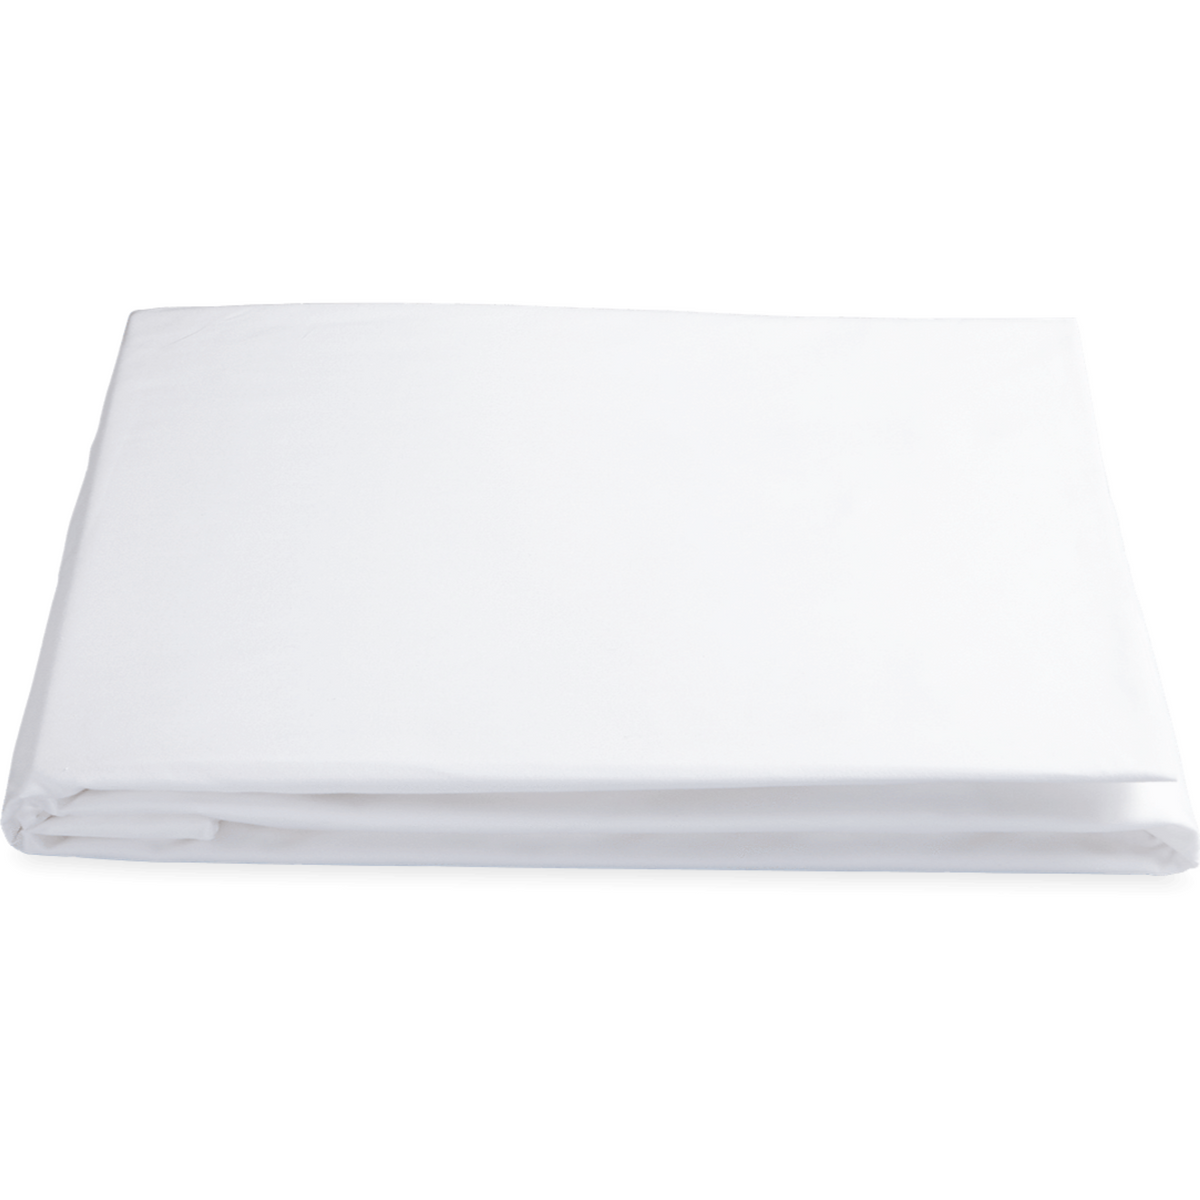 Matouk Sierra Bedding Fitted Sheet White Fine Linens